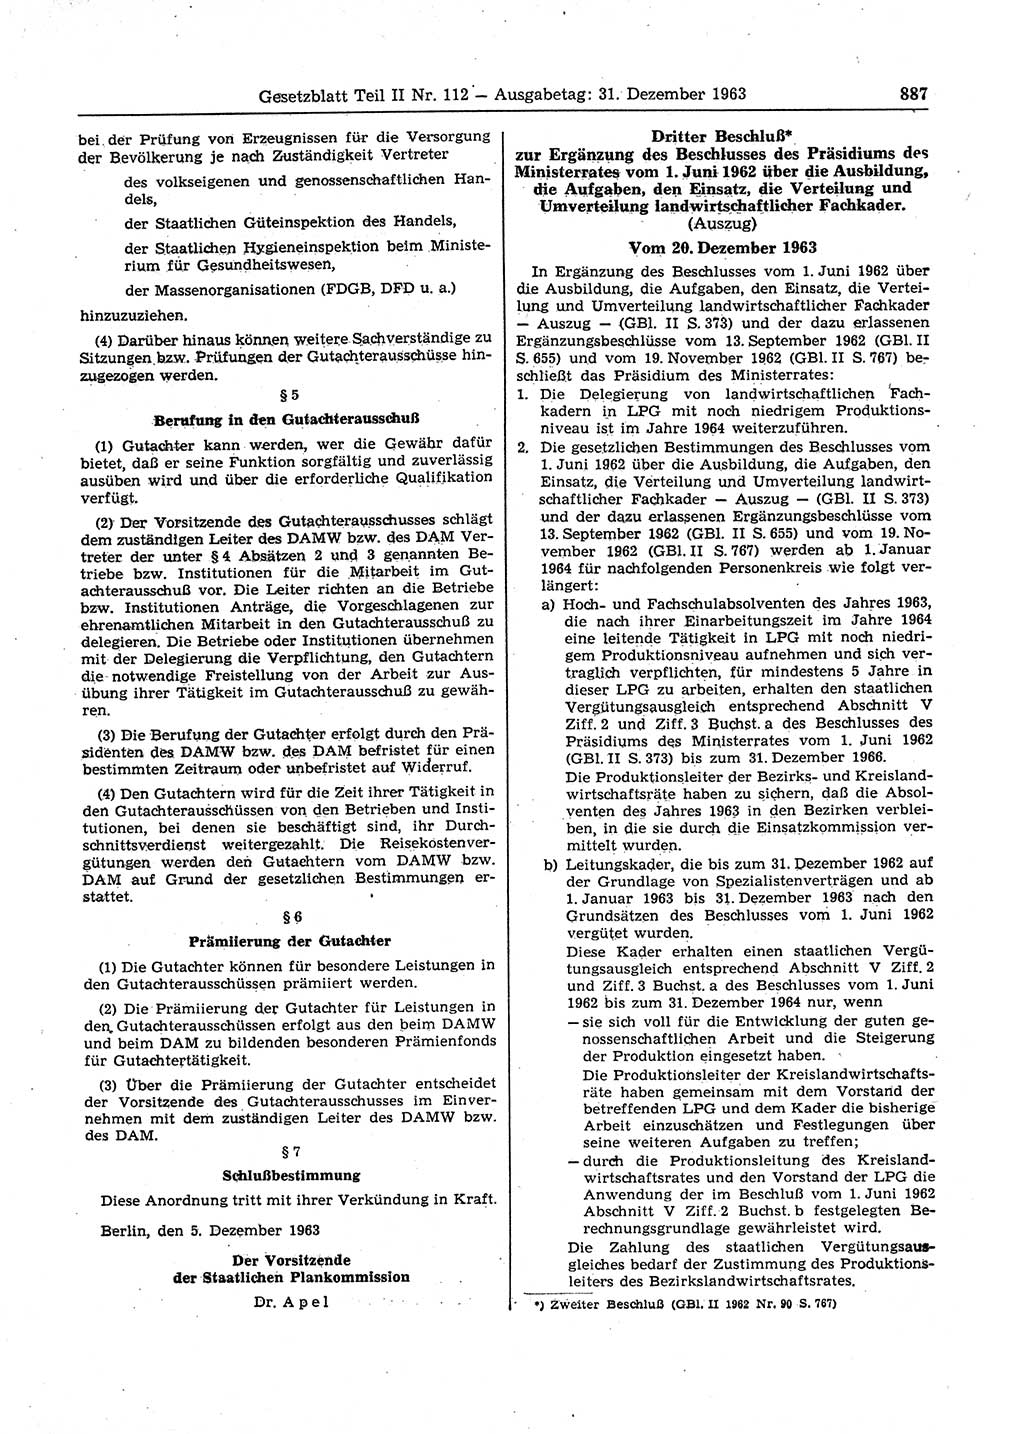 Gesetzblatt (GBl.) der Deutschen Demokratischen Republik (DDR) Teil ⅠⅠ 1963, Seite 887 (GBl. DDR ⅠⅠ 1963, S. 887)